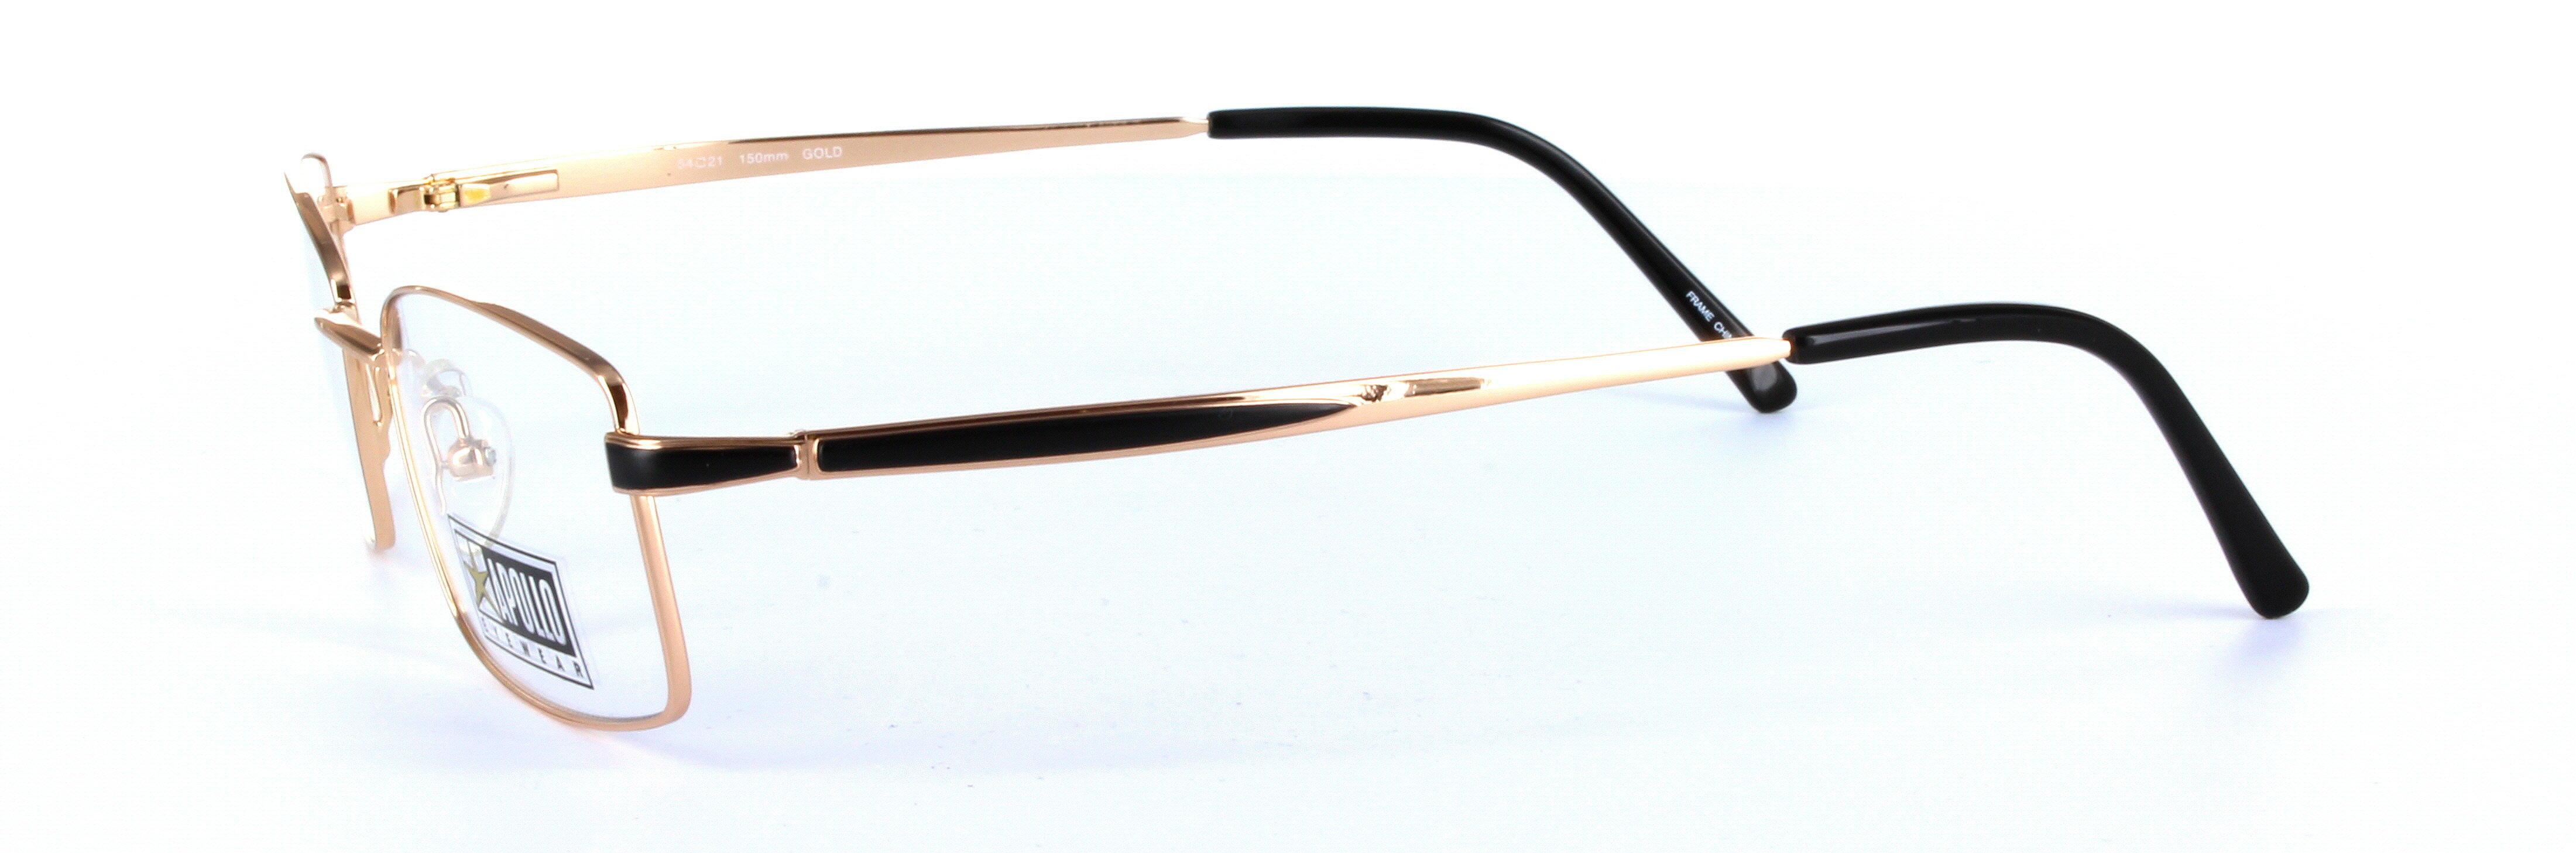 Chianti Gold Full Rim Rectangular Metal Glasses  - Image View 2